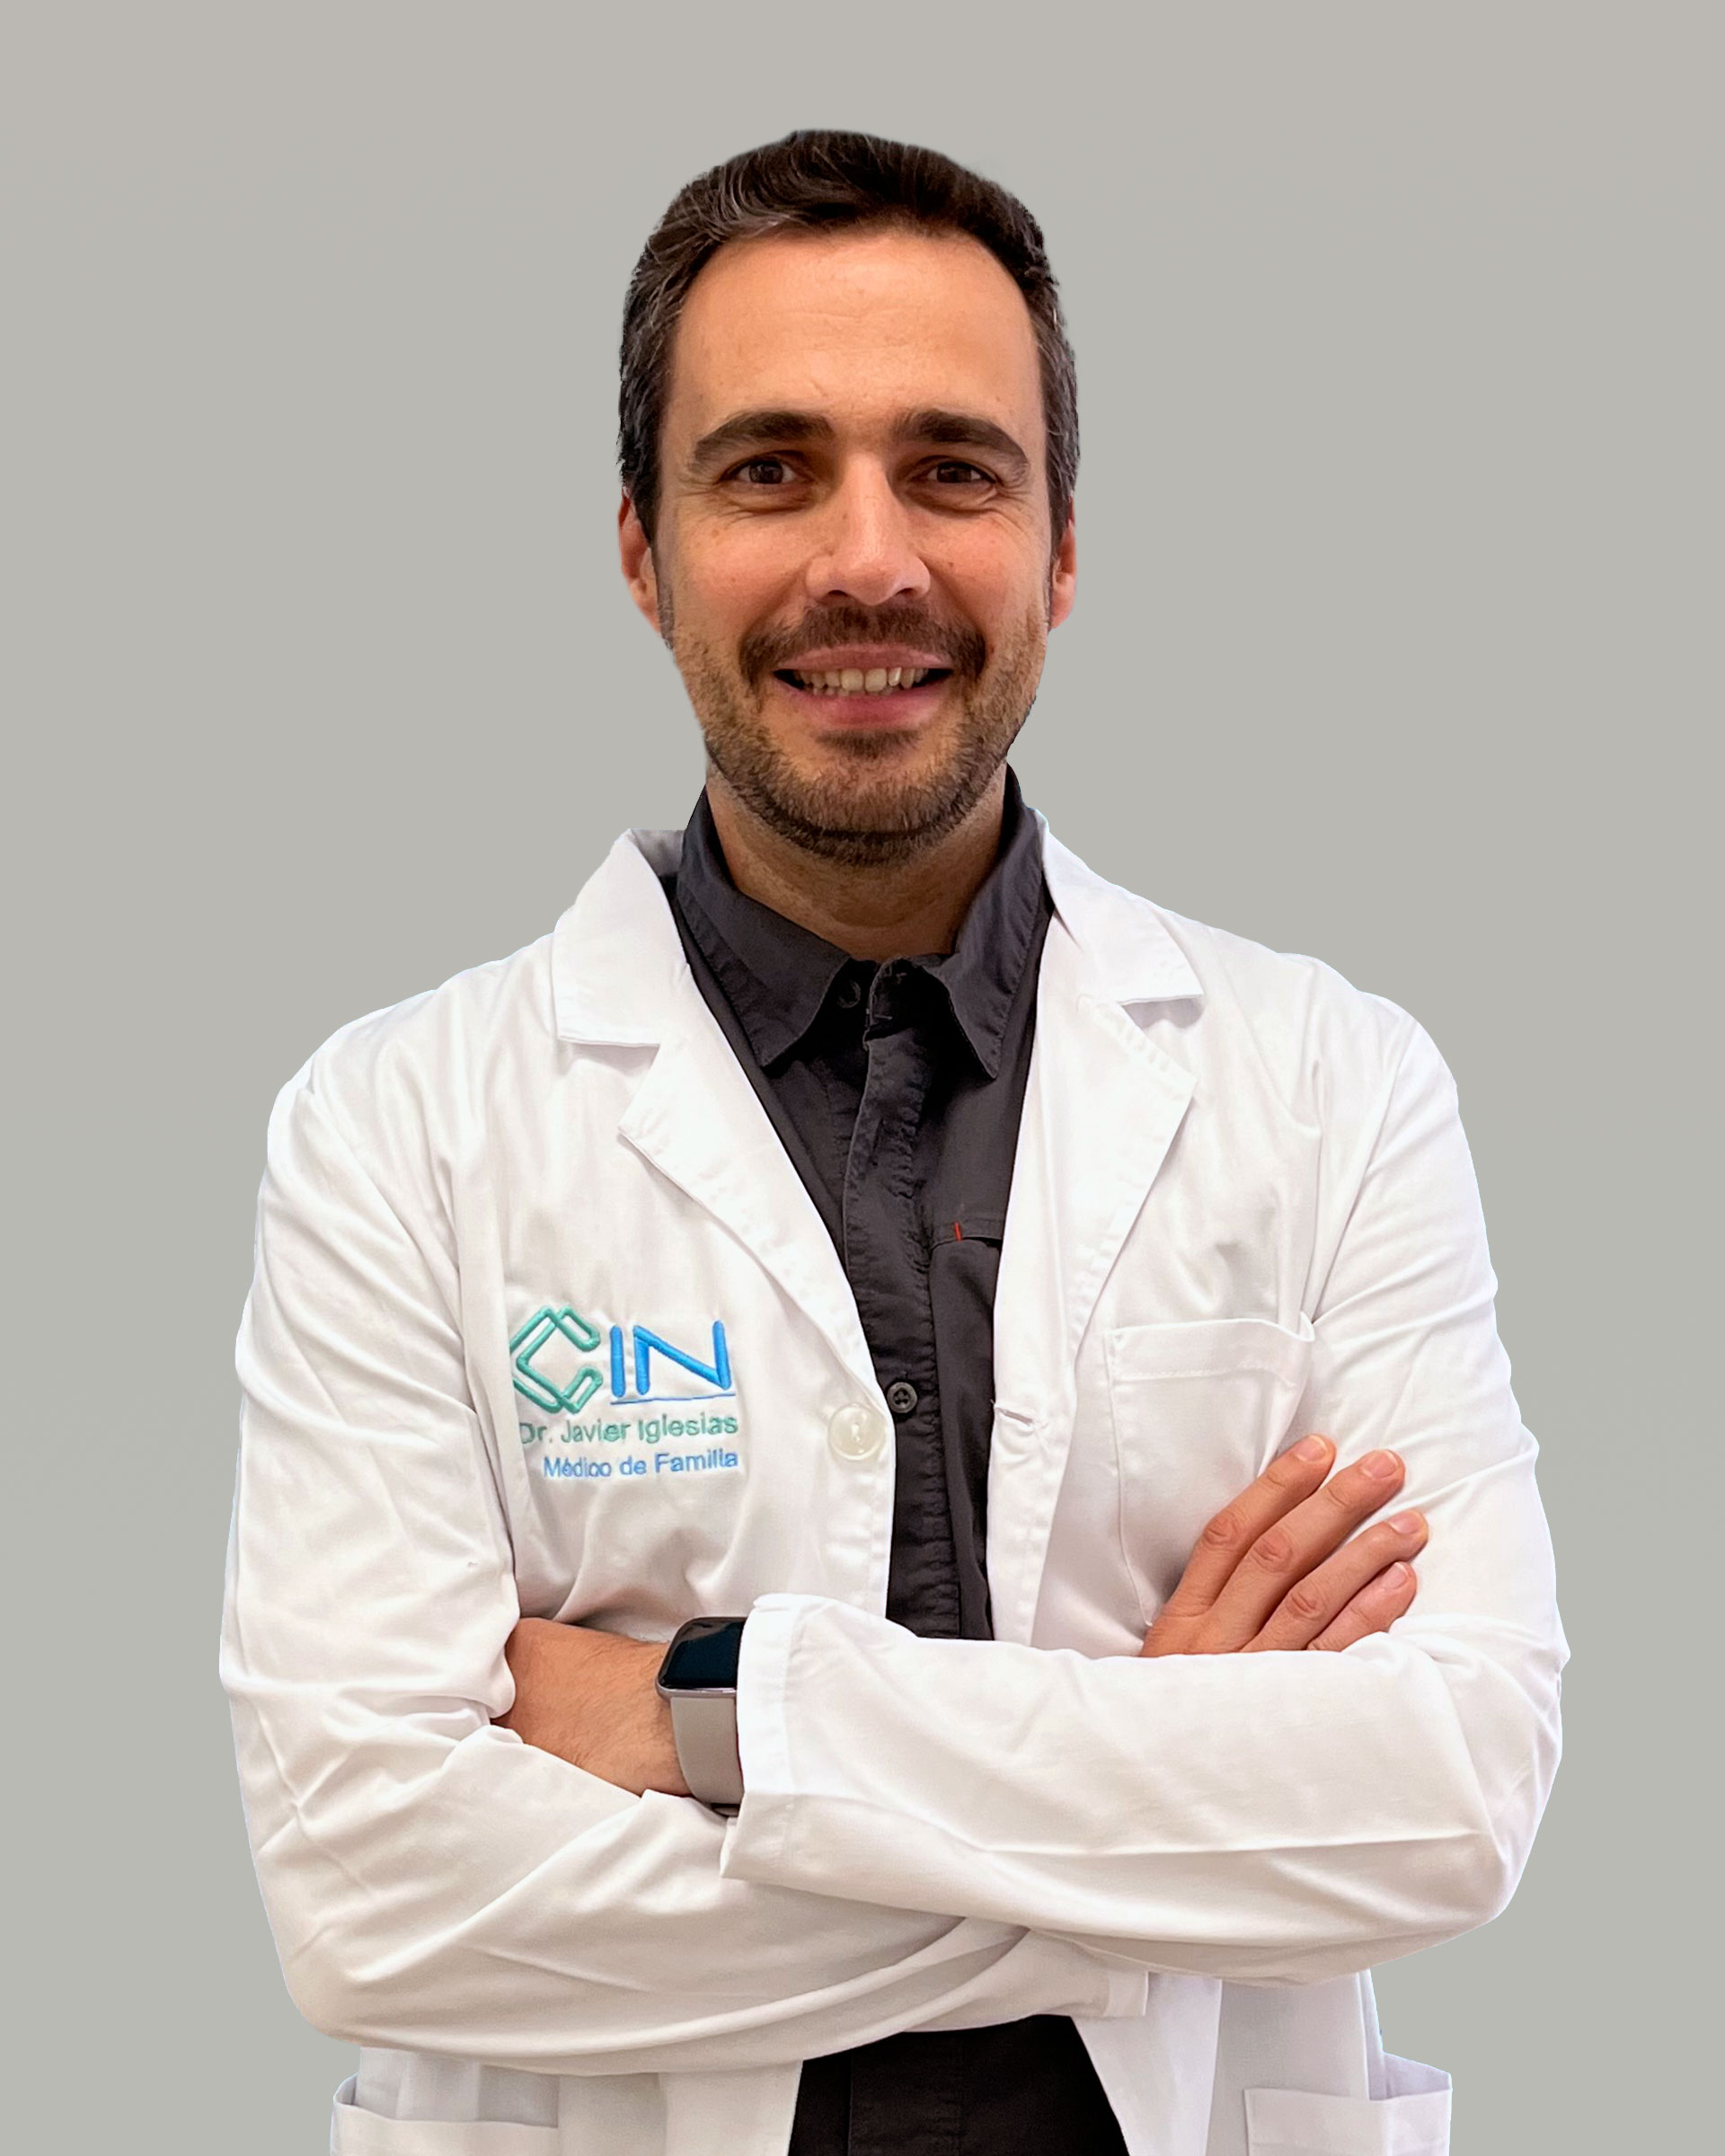 Dr. Javier Iglesias